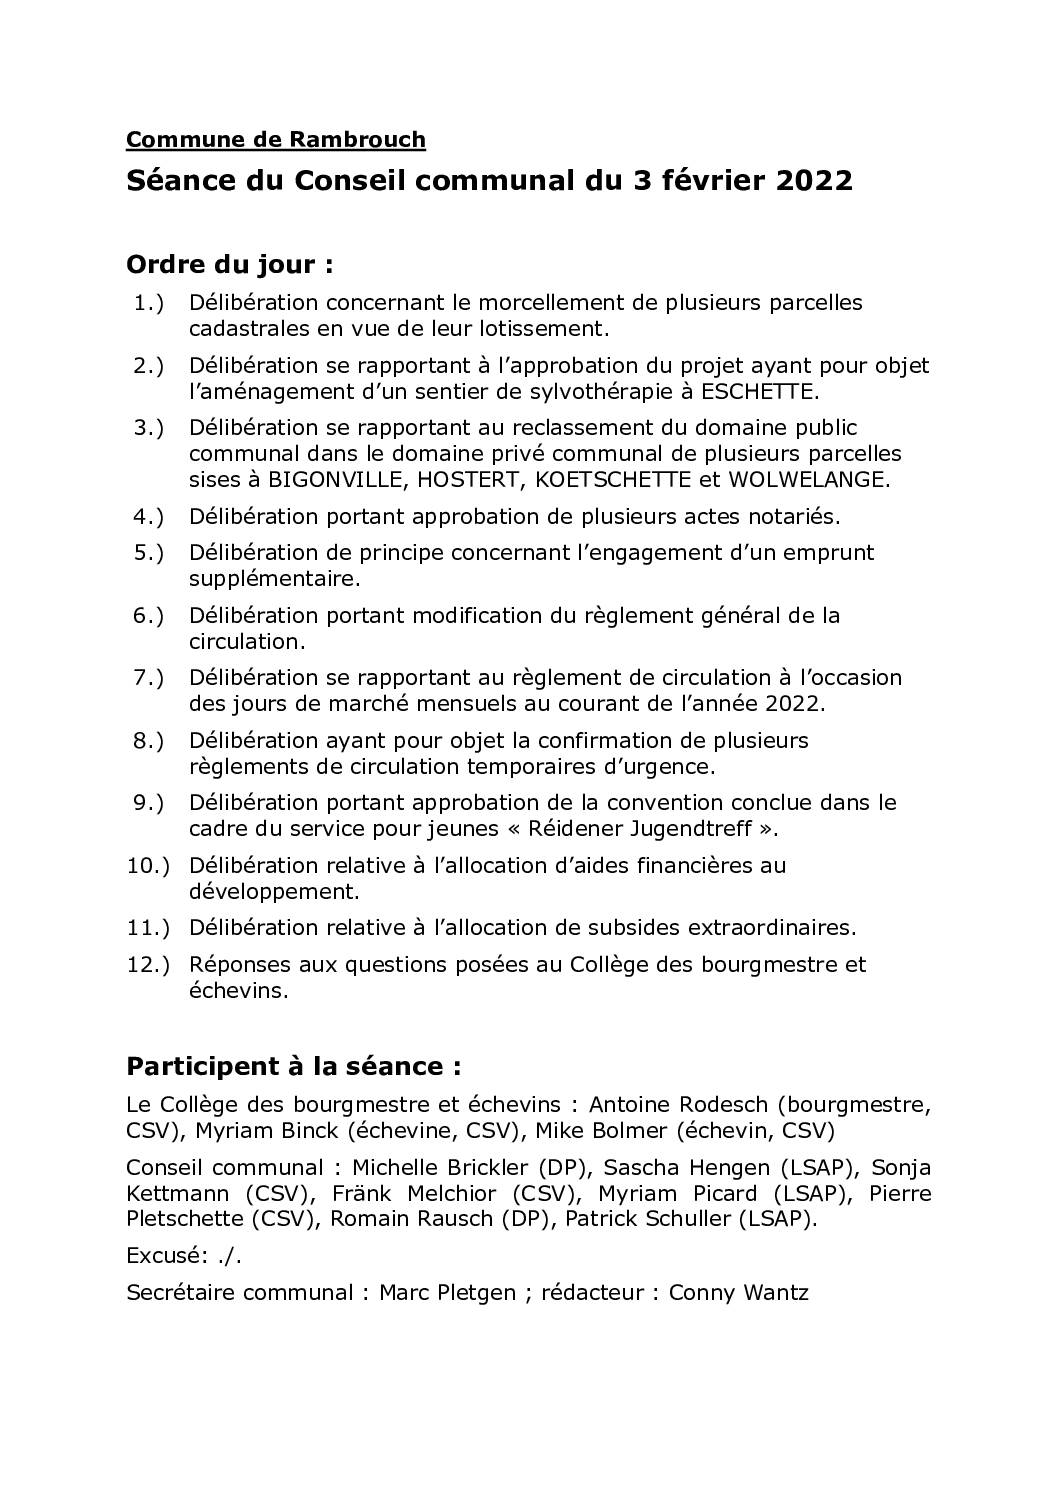 Rapport du conseil communal du 03.02.2022 FR